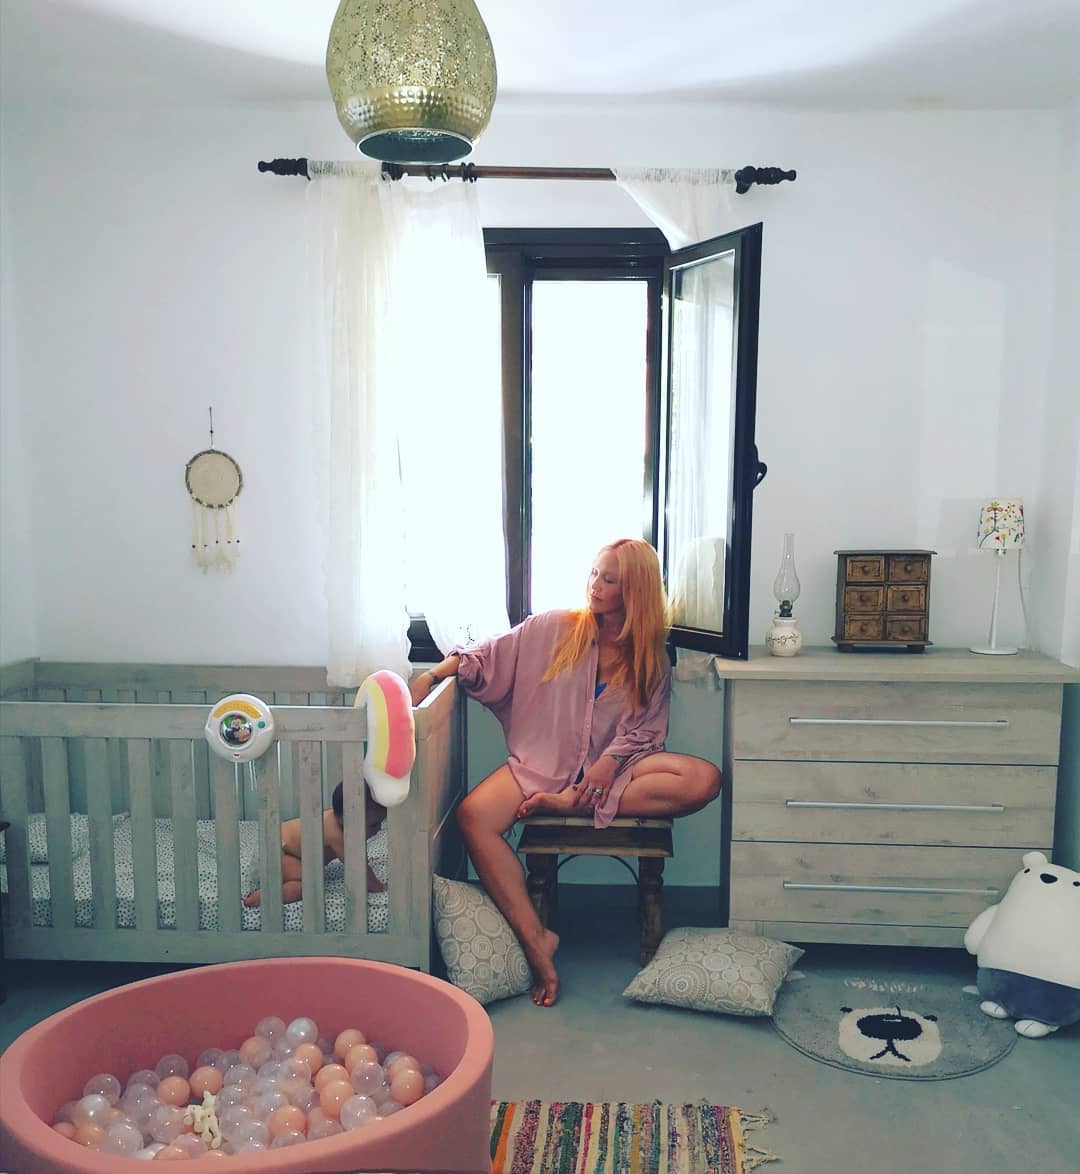 Πηνελόπη Αναστασοπούλου: Μας δείχνει το υπέροχο δωμάτιο των παιδιών της στο εξοχικό σπίτι (εικόνα)